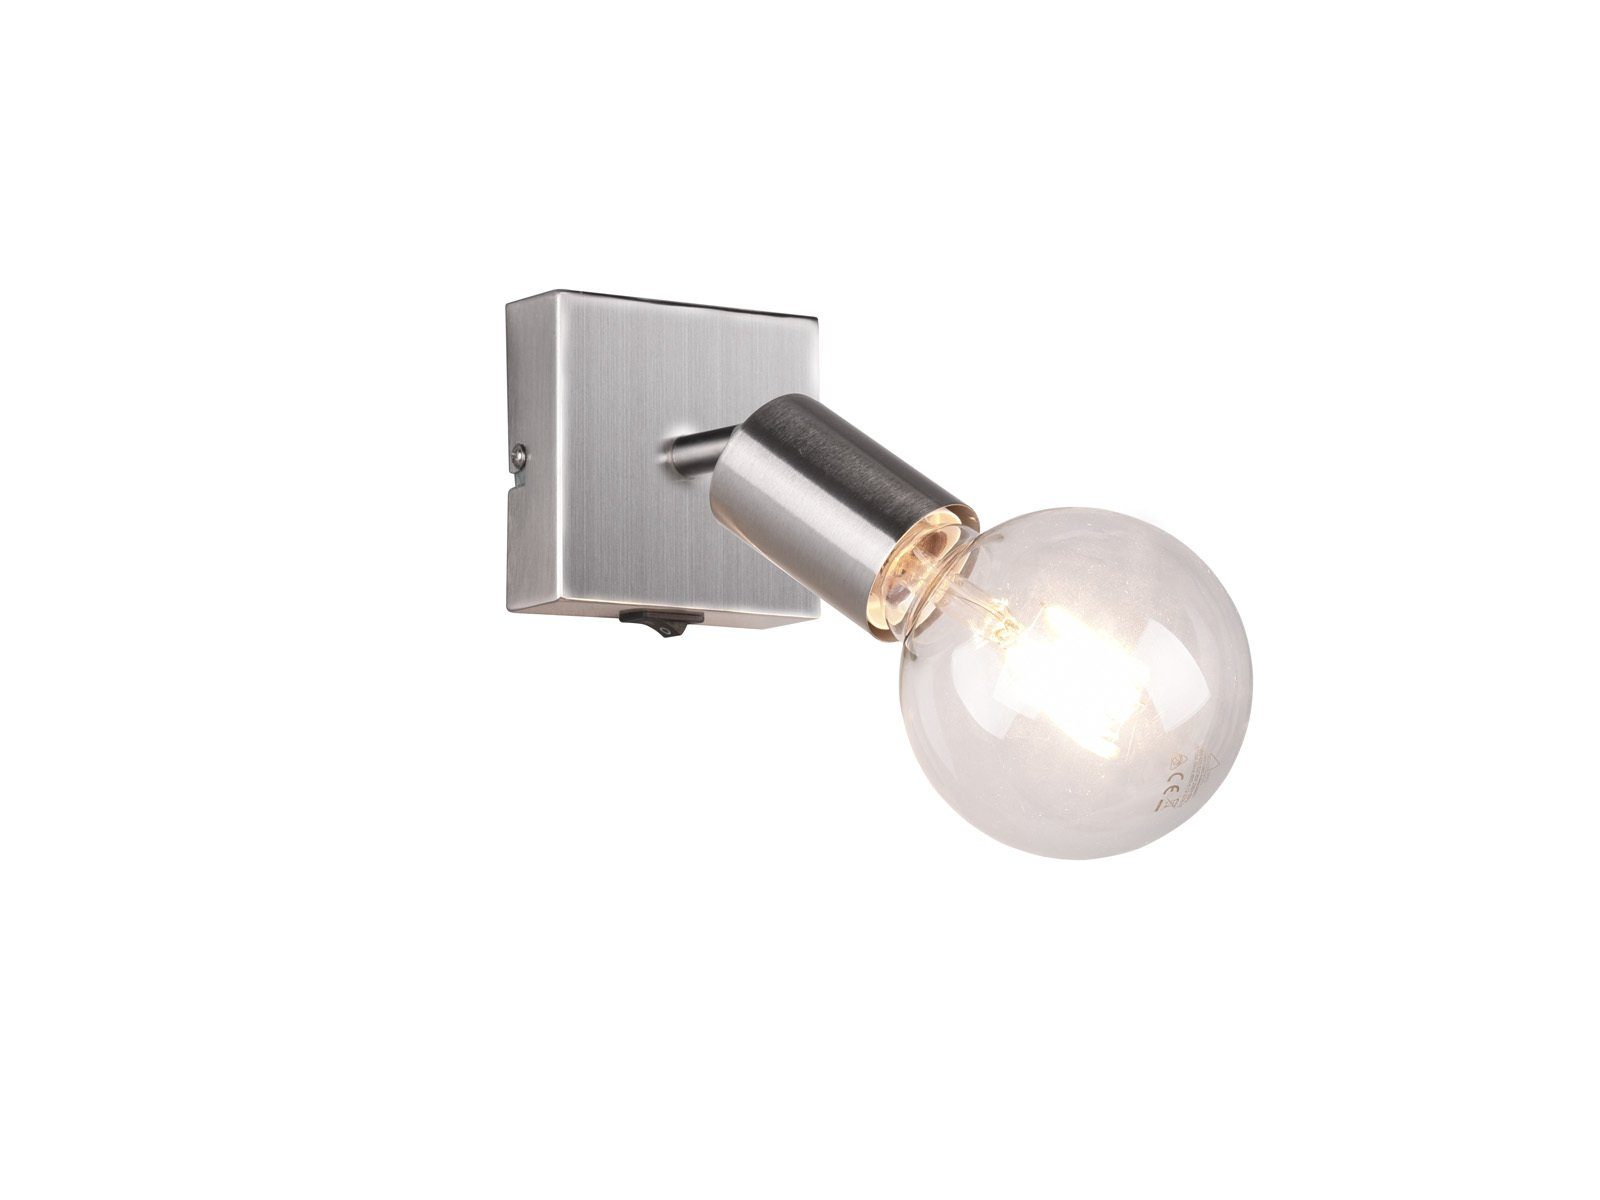 LED Spot Lampe 4W Akzent Wand Leuchte Schalter Küche Flur schwenkbar Big Light 